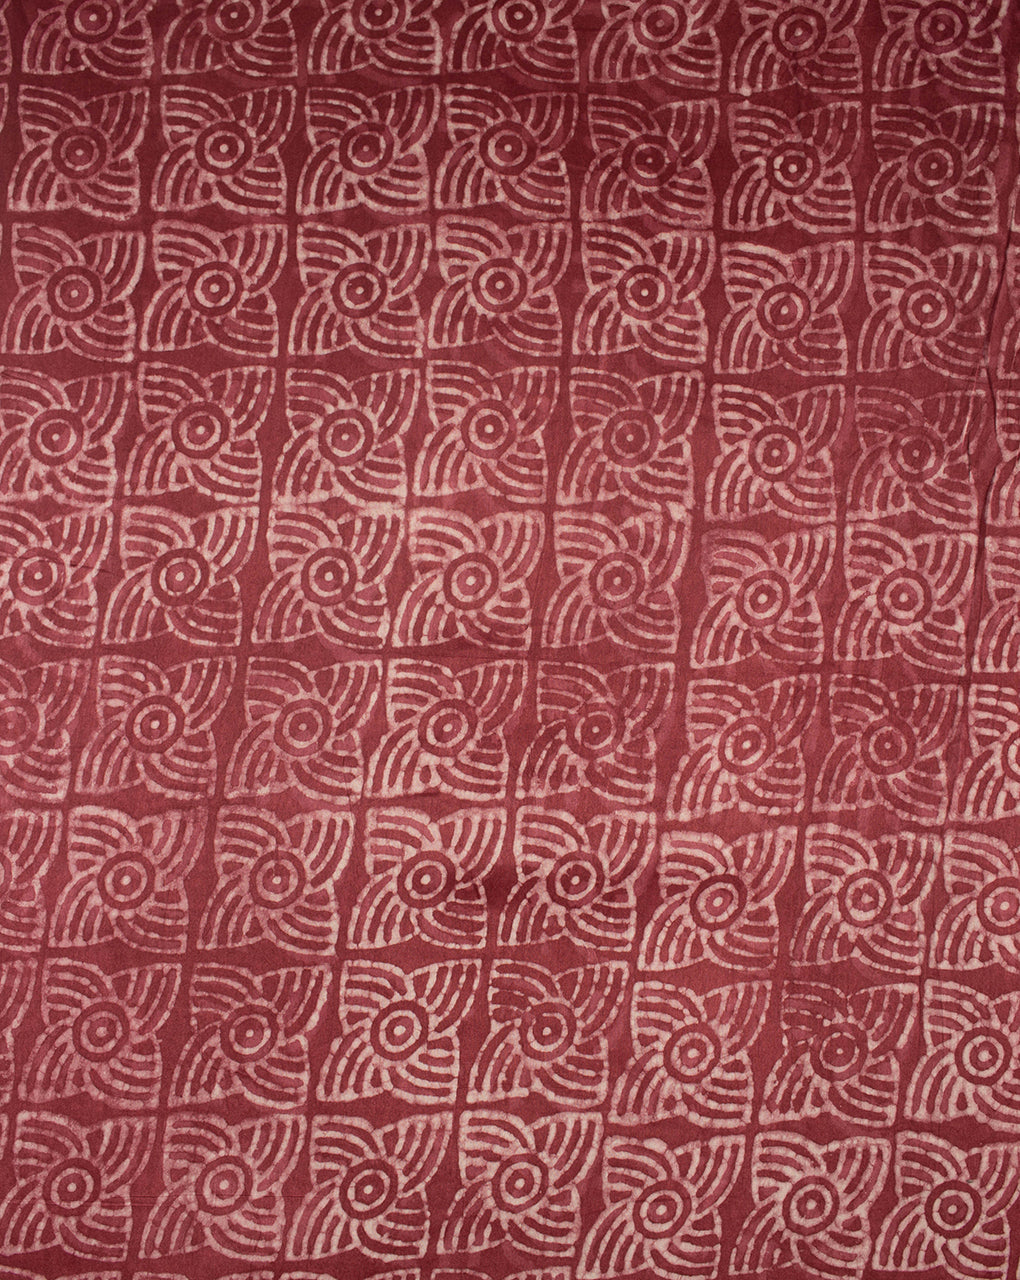 Dabu Hand Block Mercerized Chanderi Fabric - Fabriclore.com